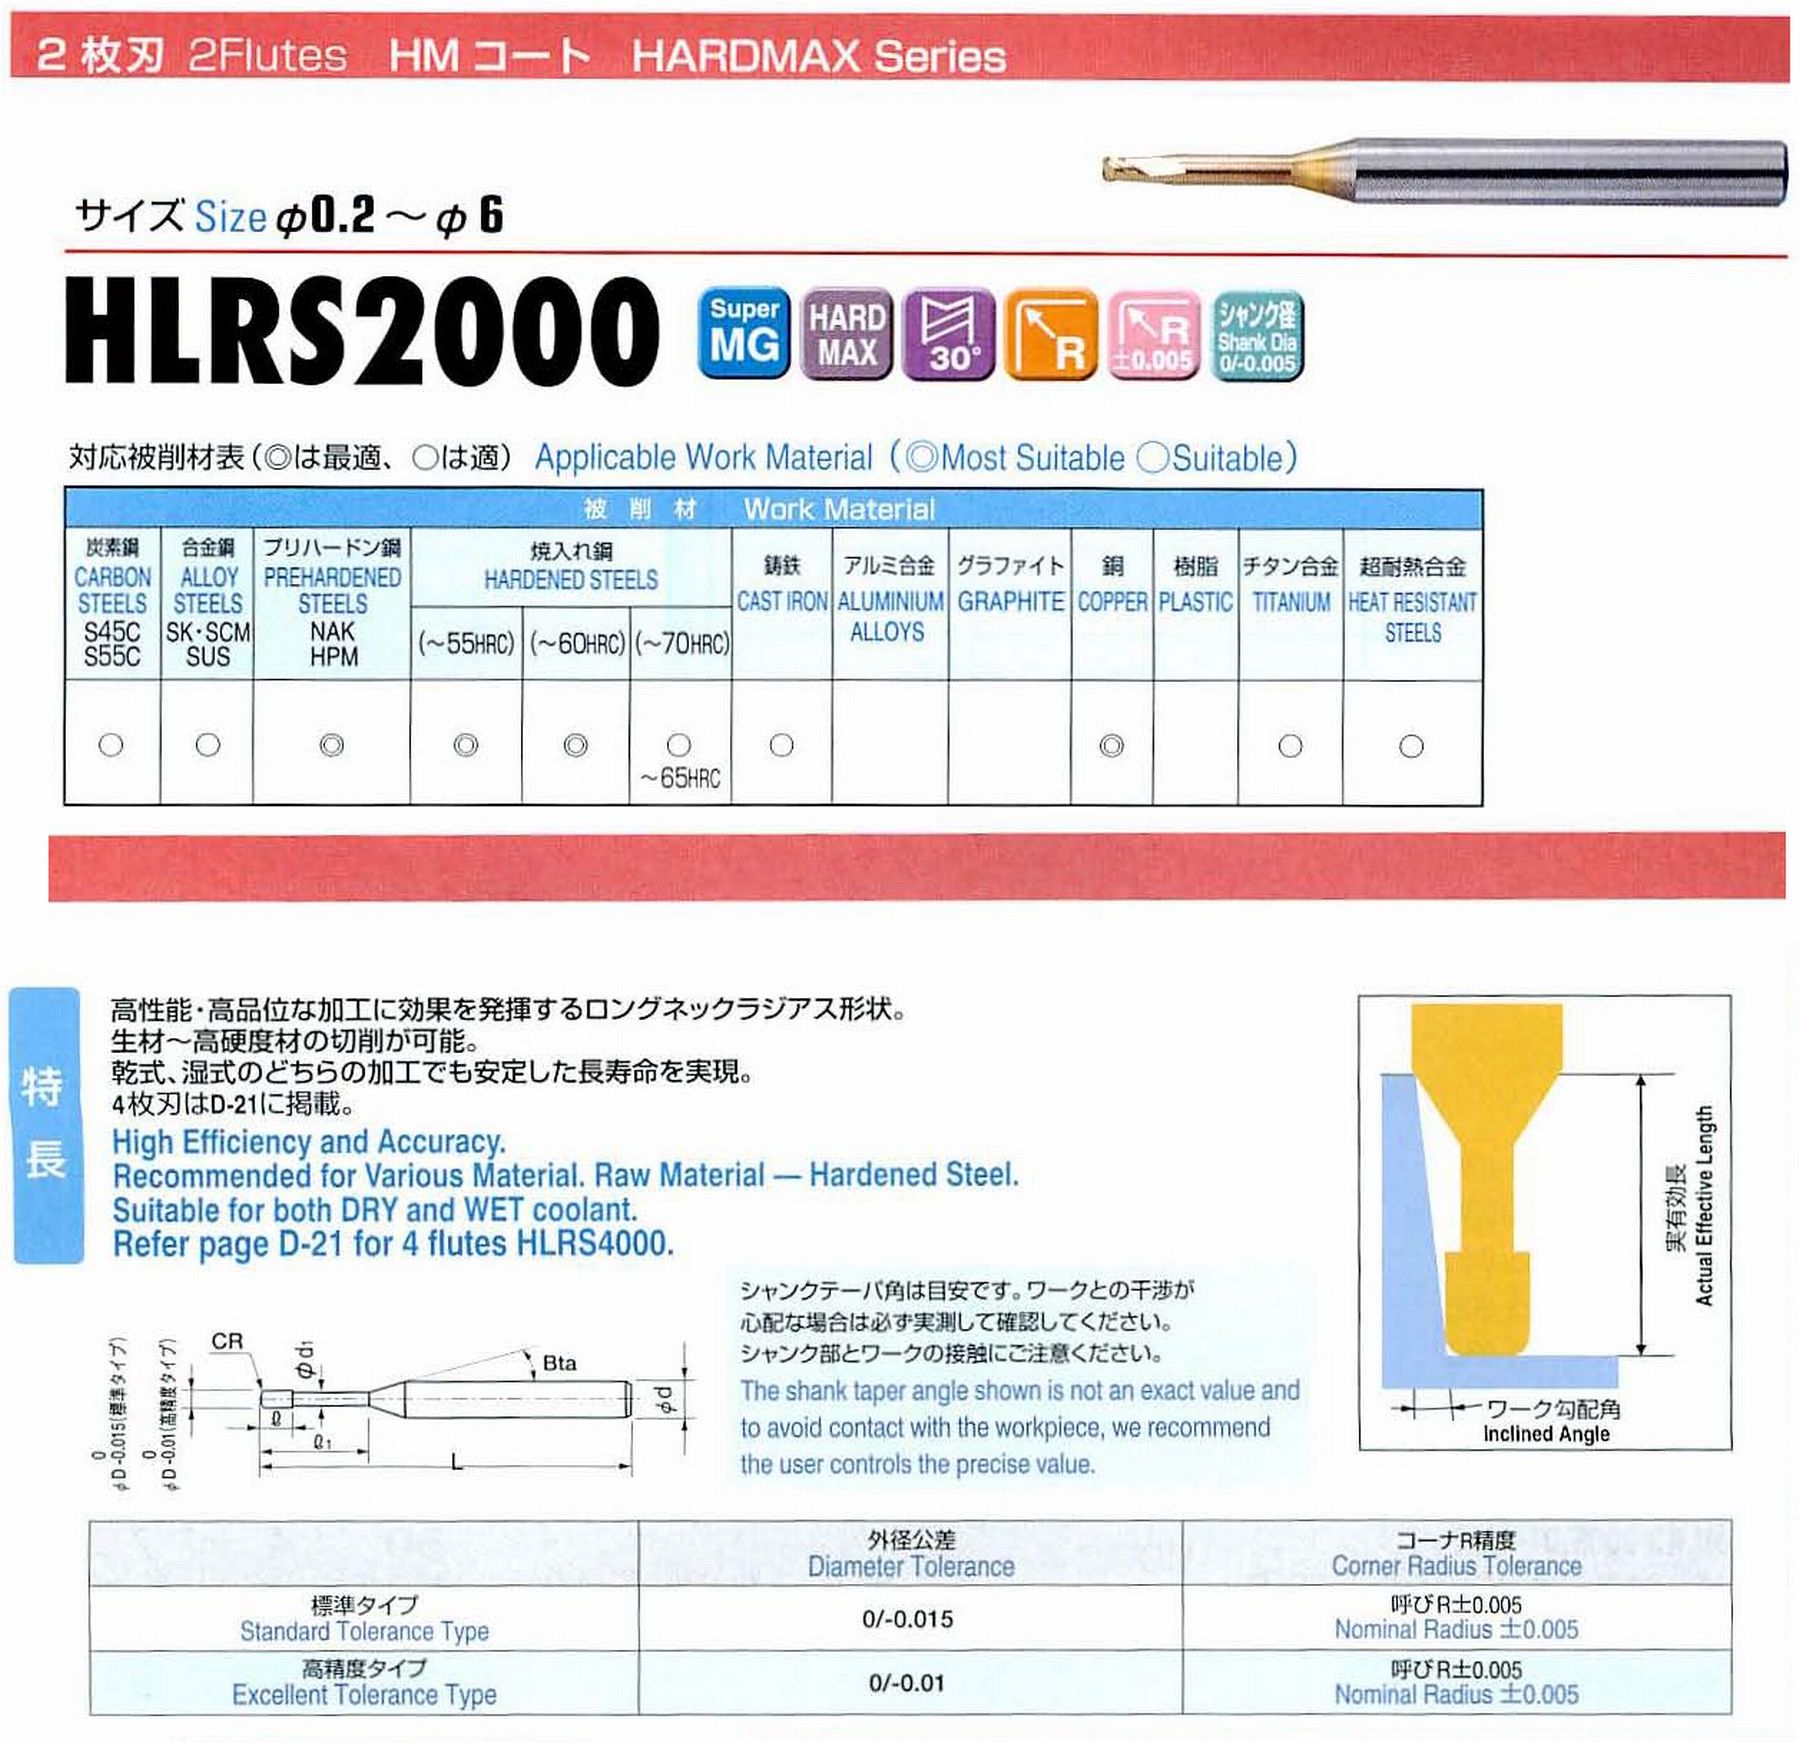 ユニオンツール 2枚刃 HLRS2008-005-040 外径0.8 コーナ半径R0.05 有効長4 刃長0.8 首径0.78 シャンクテーパ角16° 全長50 シャンク径4